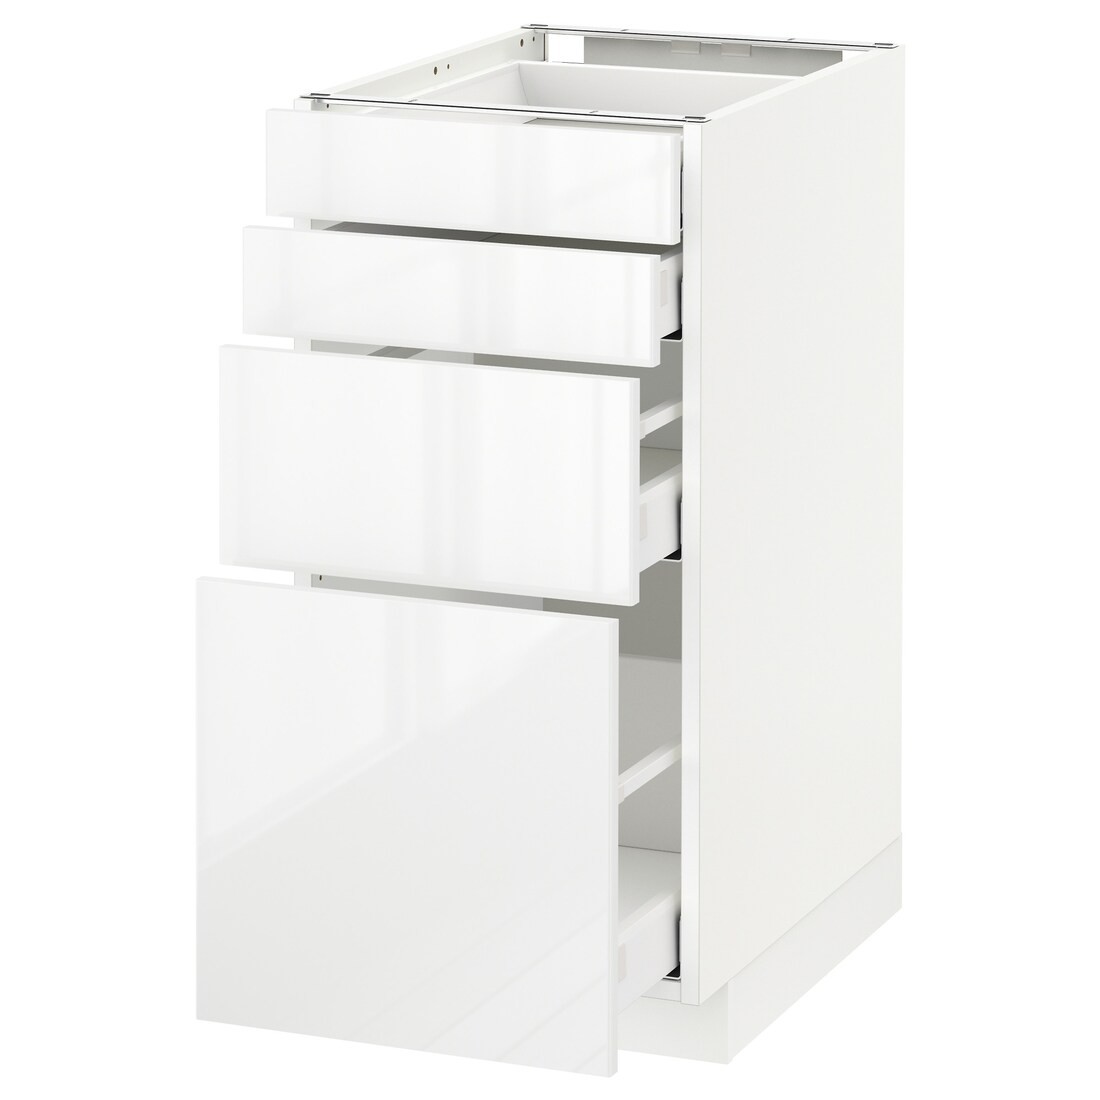 IKEA METOD МЕТОД / MAXIMERA МАКСИМЕРА Напольный шкаф с ящиками, белый / Ringhult белый, 40x60 см 59049882 590.498.82